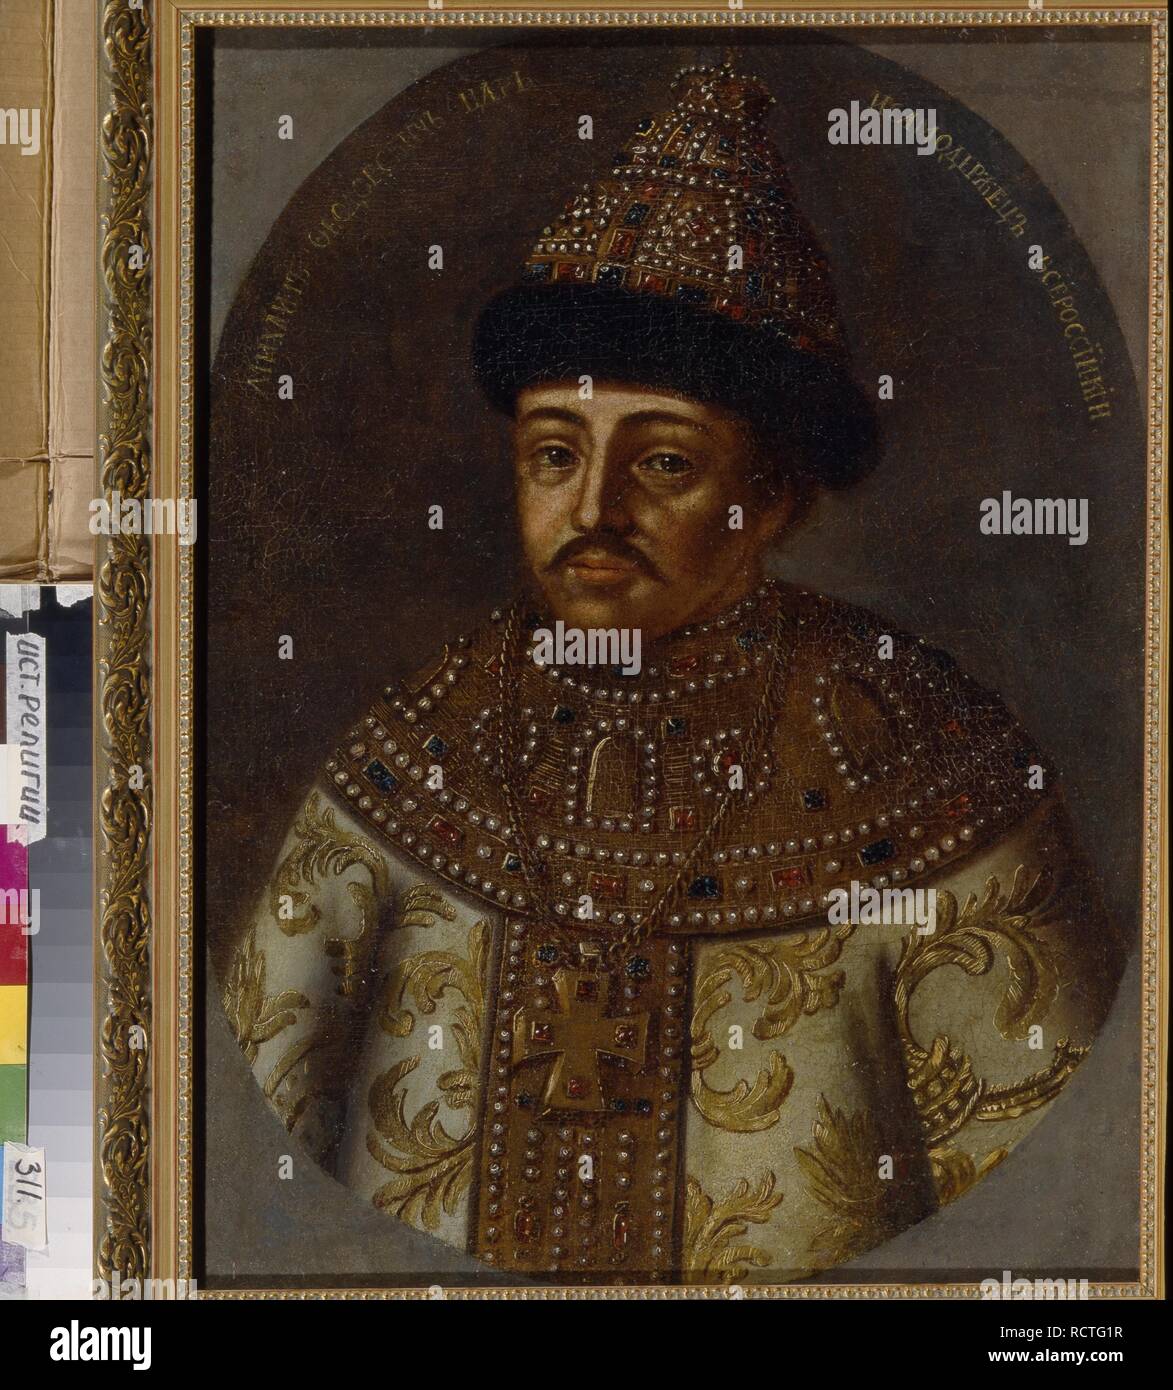 Portrait du Tsar Mikhaïl Fiodorovitch de Russie JE (1596-1645). Musée : Musée national d'histoire religieuse, St Petersbourg. Auteur : anonyme. Banque D'Images